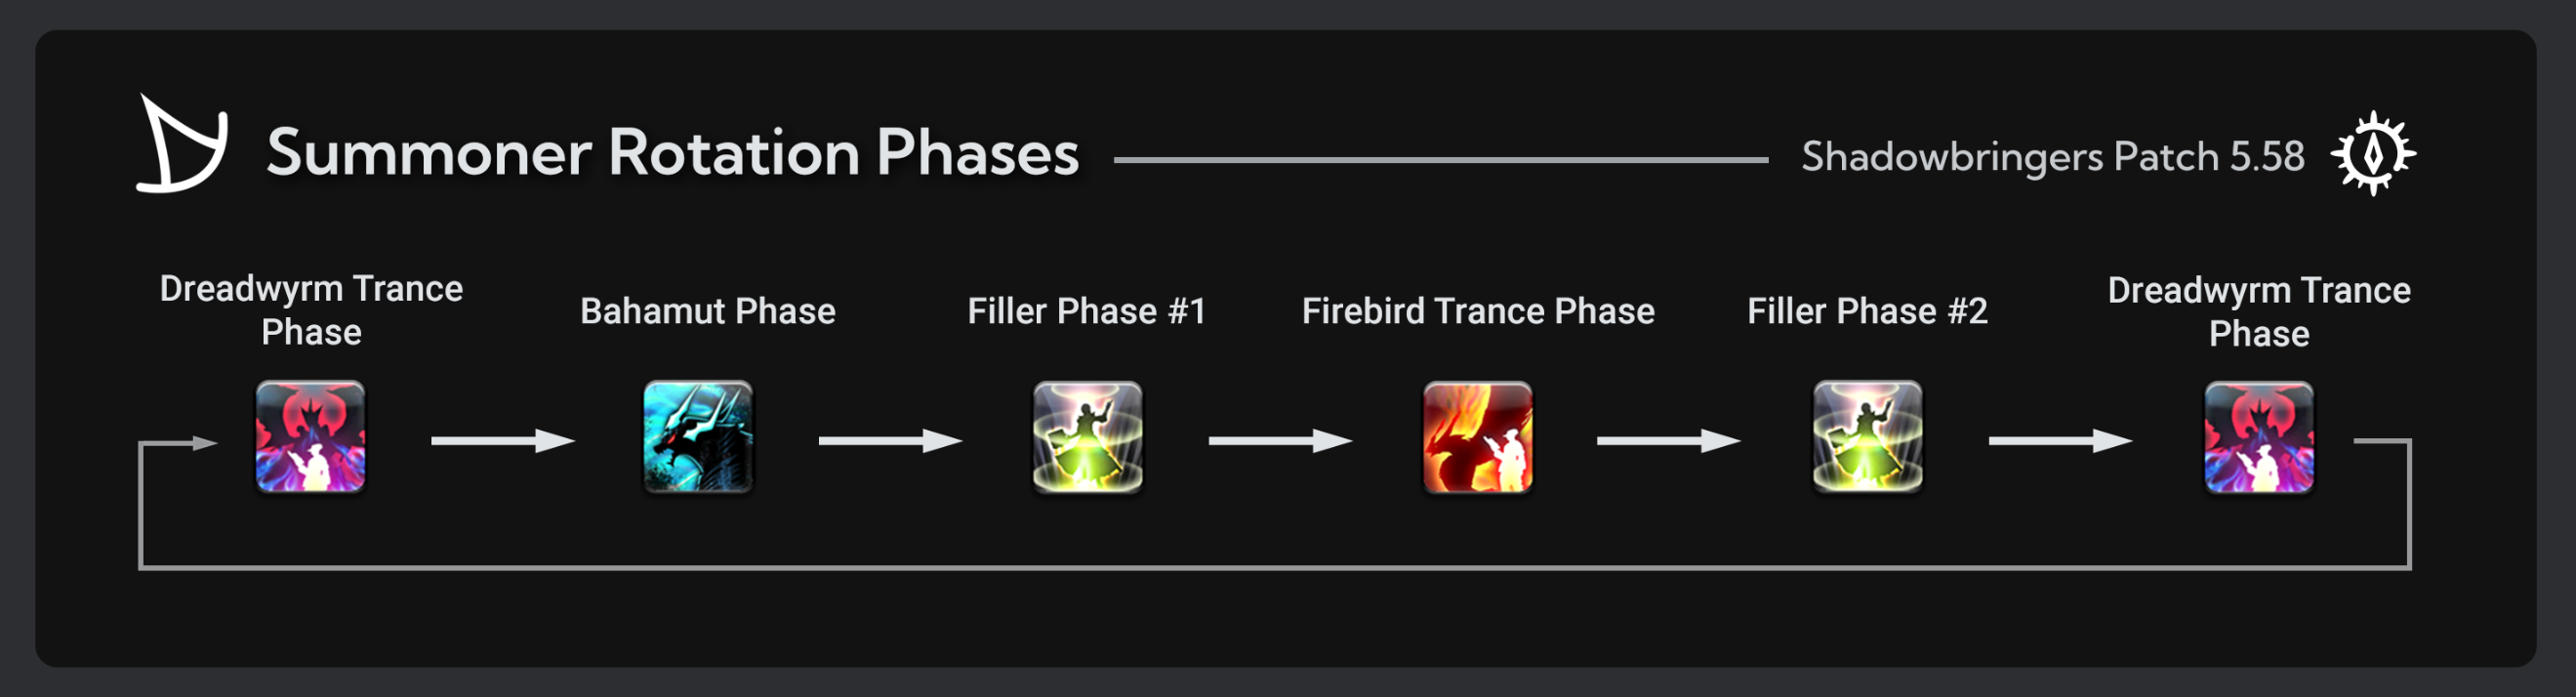 Dreadwyrm Trance Phase to Bahamut Phase to Filler Phase #1 to Firebird Trance Phase to Filler Phase #2 to Dreadwhym Trance Phase and repeat.